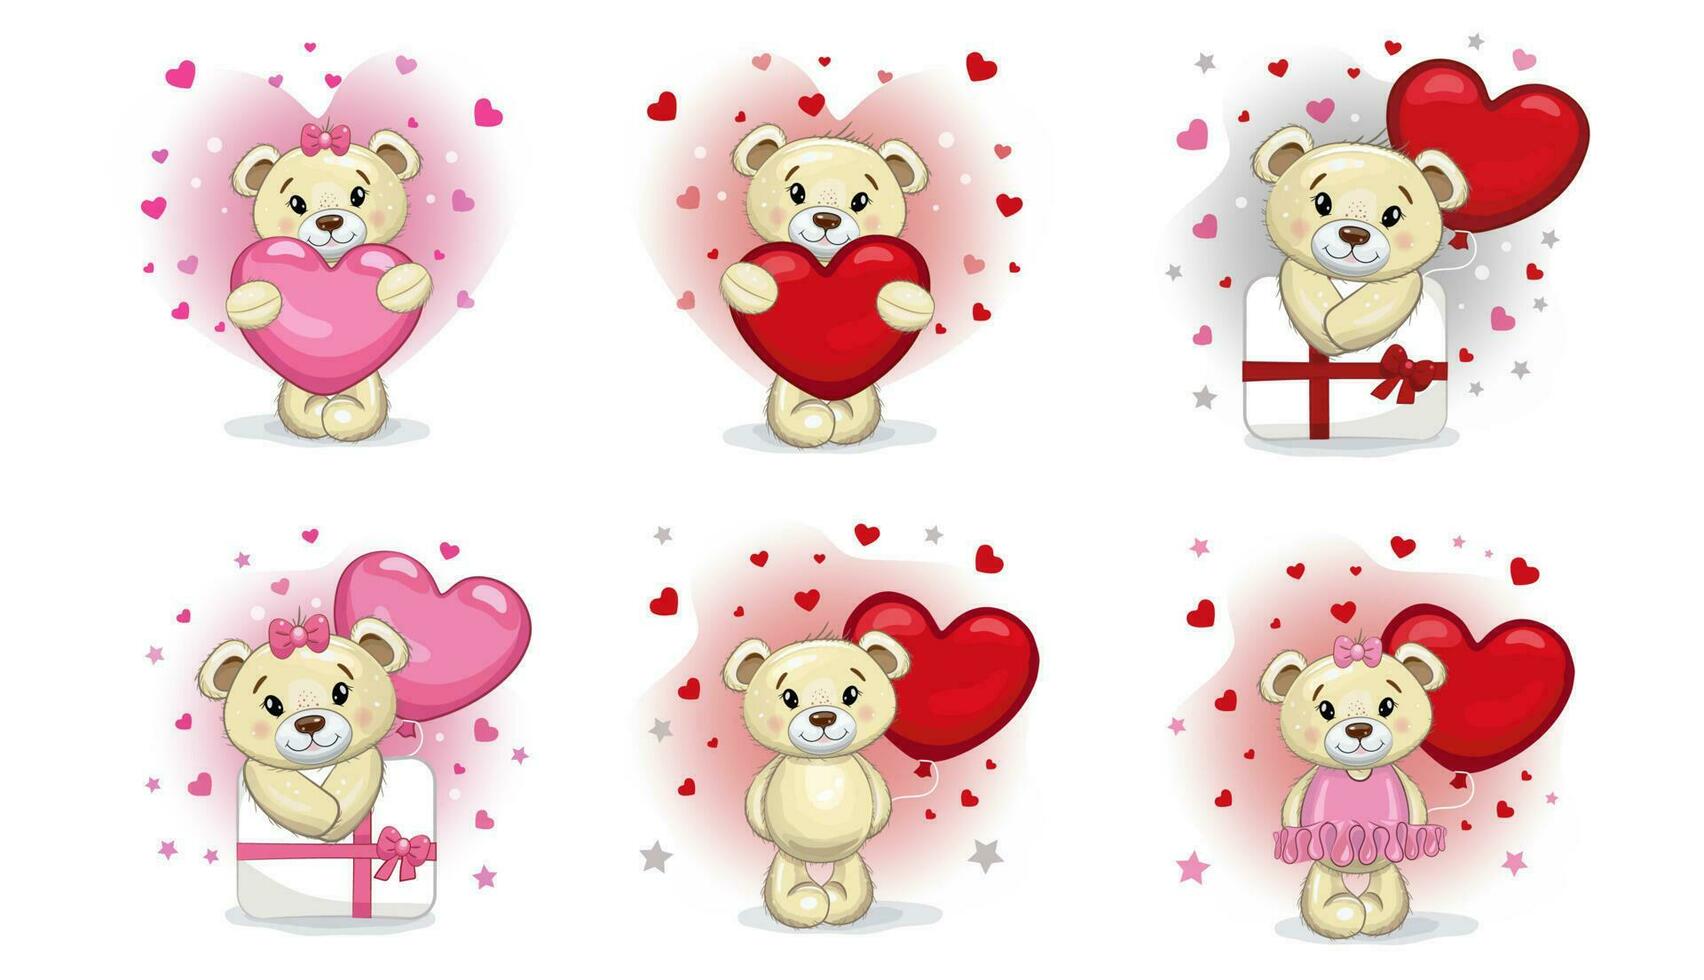 Cute Teddy bears love set.  Cartoon style illustration. Teddy bear, present, heart isolated on white background. vector